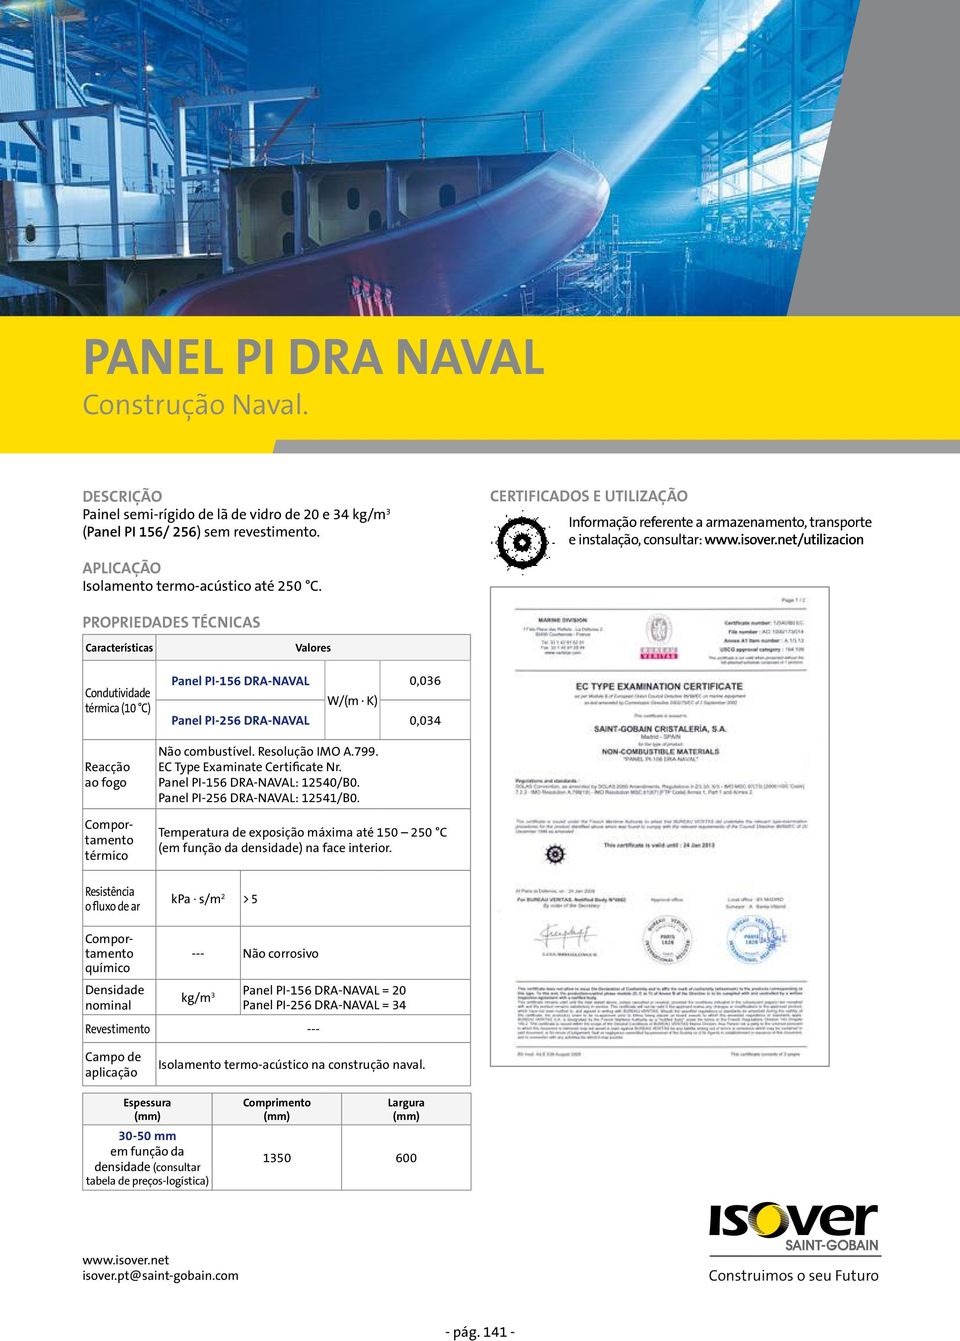 térmica (10 C) Panel PI-156 DRA-NAVAL 0,036 Panel PI-256 DRA-NAVAL 0,034 Panel PI-156 DRA-NAVAL: 12540/B0. Panel PI-256 DRA-NAVAL: 12541/B0.